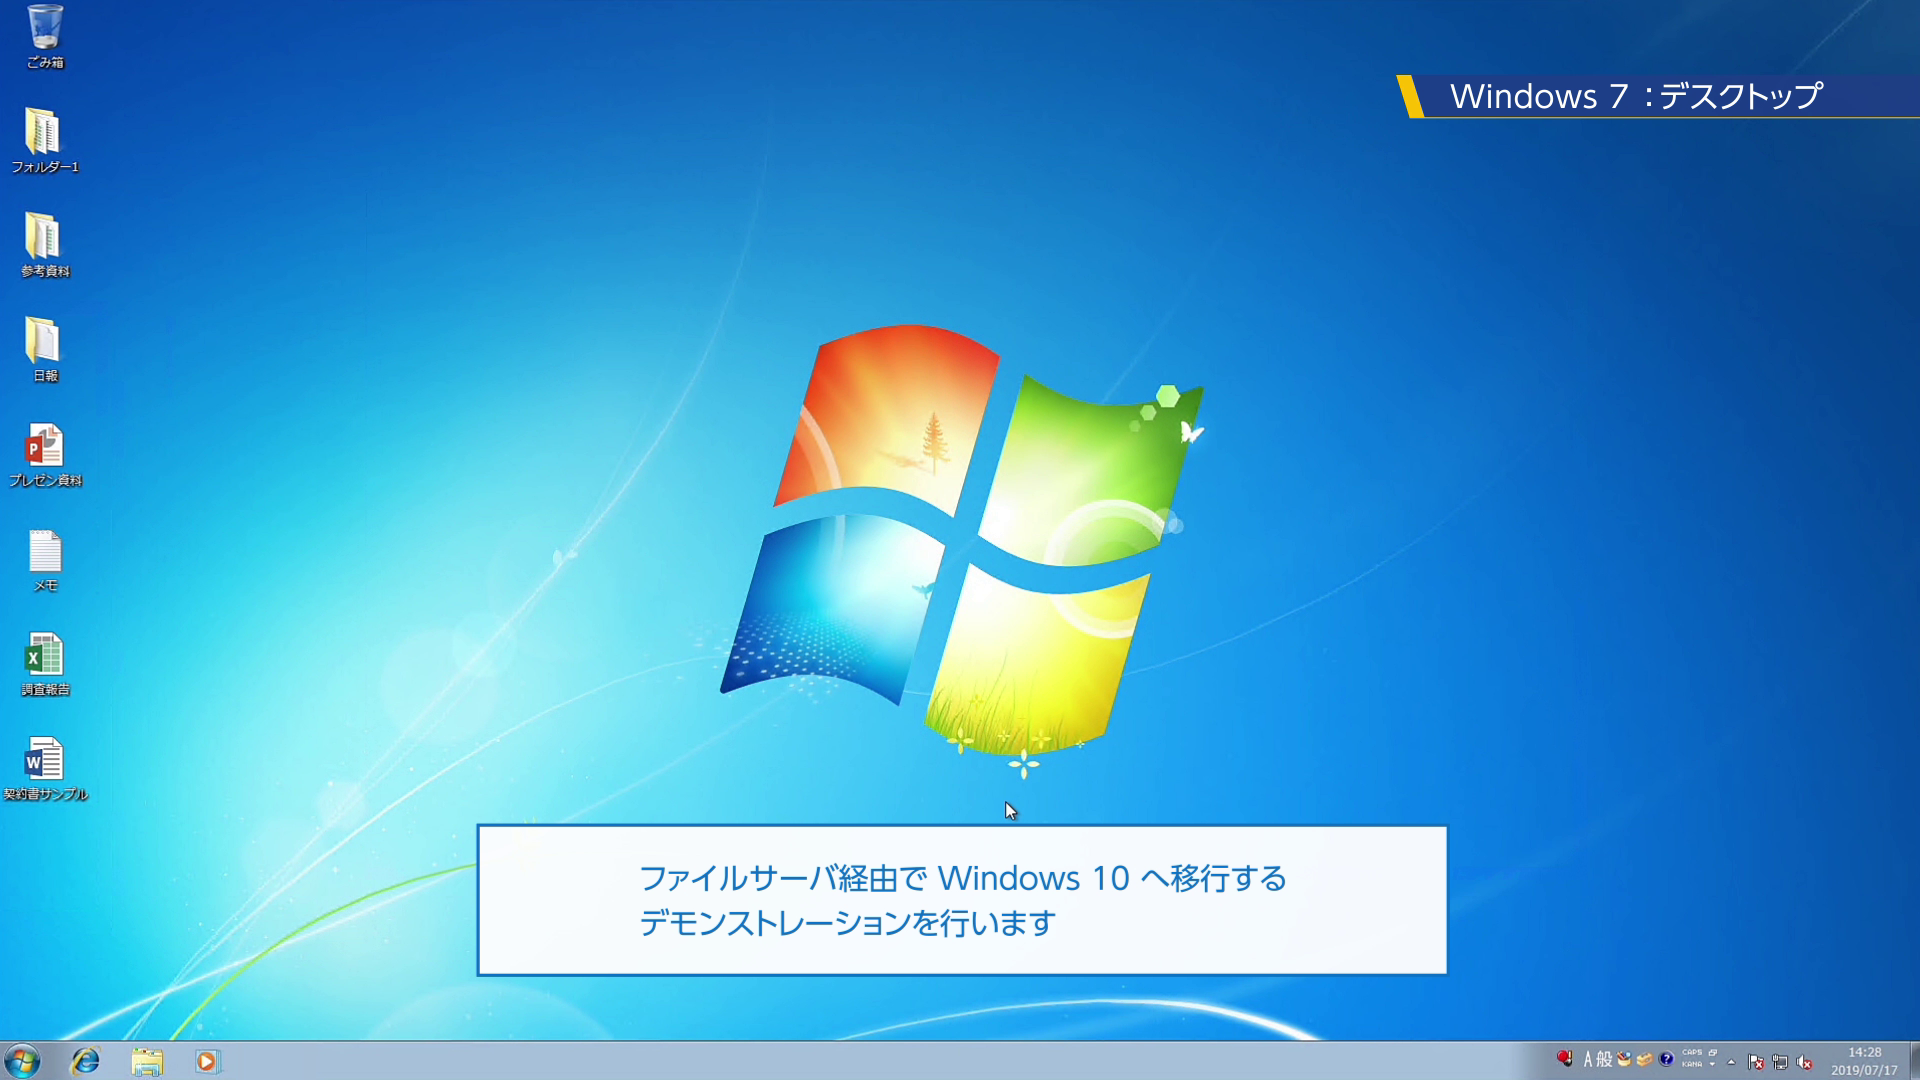 Windows 10 トータルサービス Windows 7 から Windows 10 へのアップグレードをトータルでご支援 株式会社ソフトクリエイト